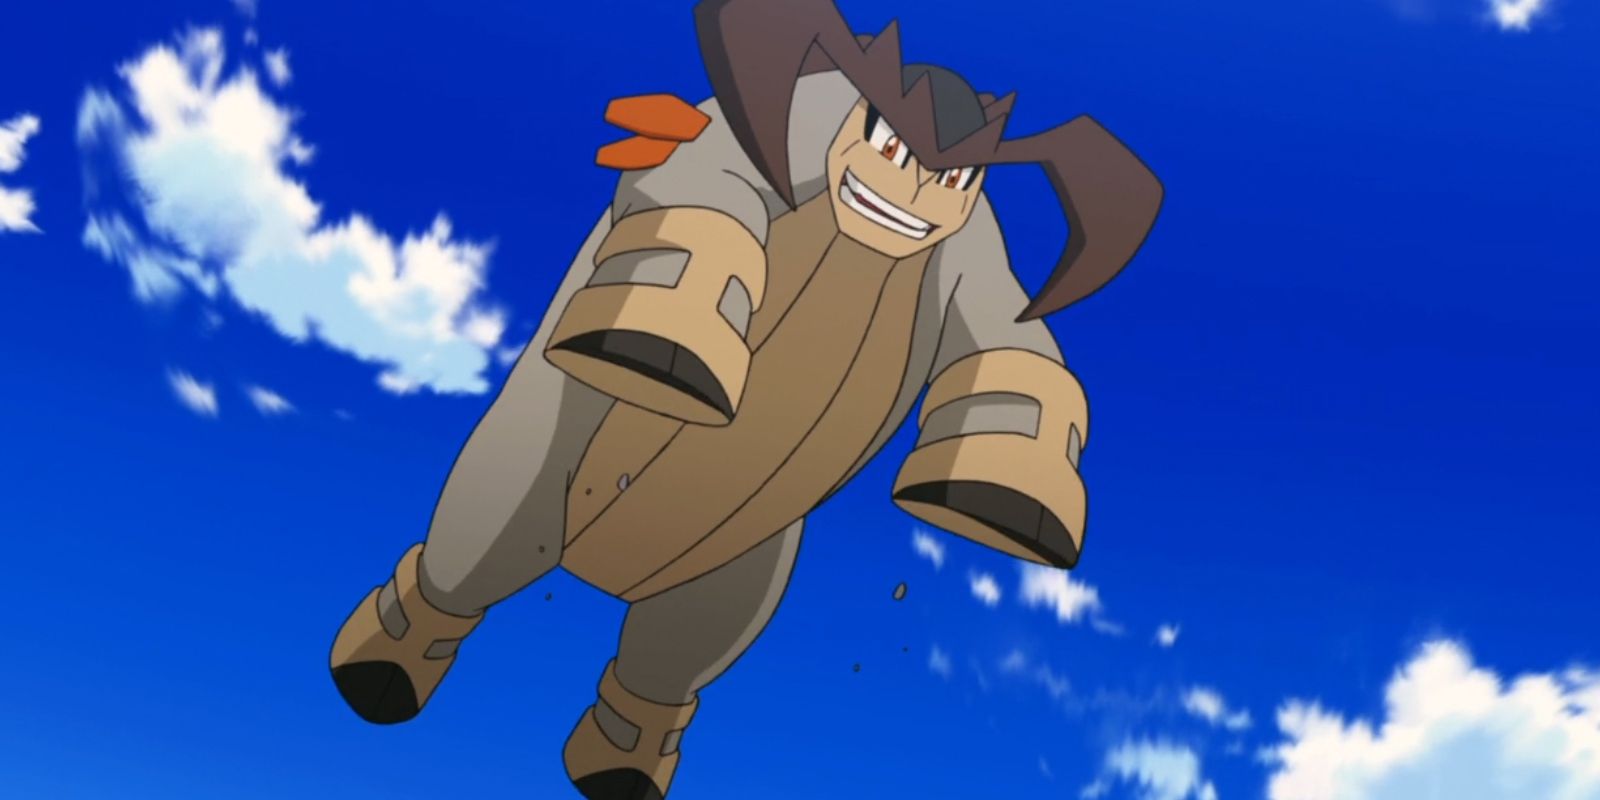 Terrakion jumps and prepares to strike in the Pokemon anime